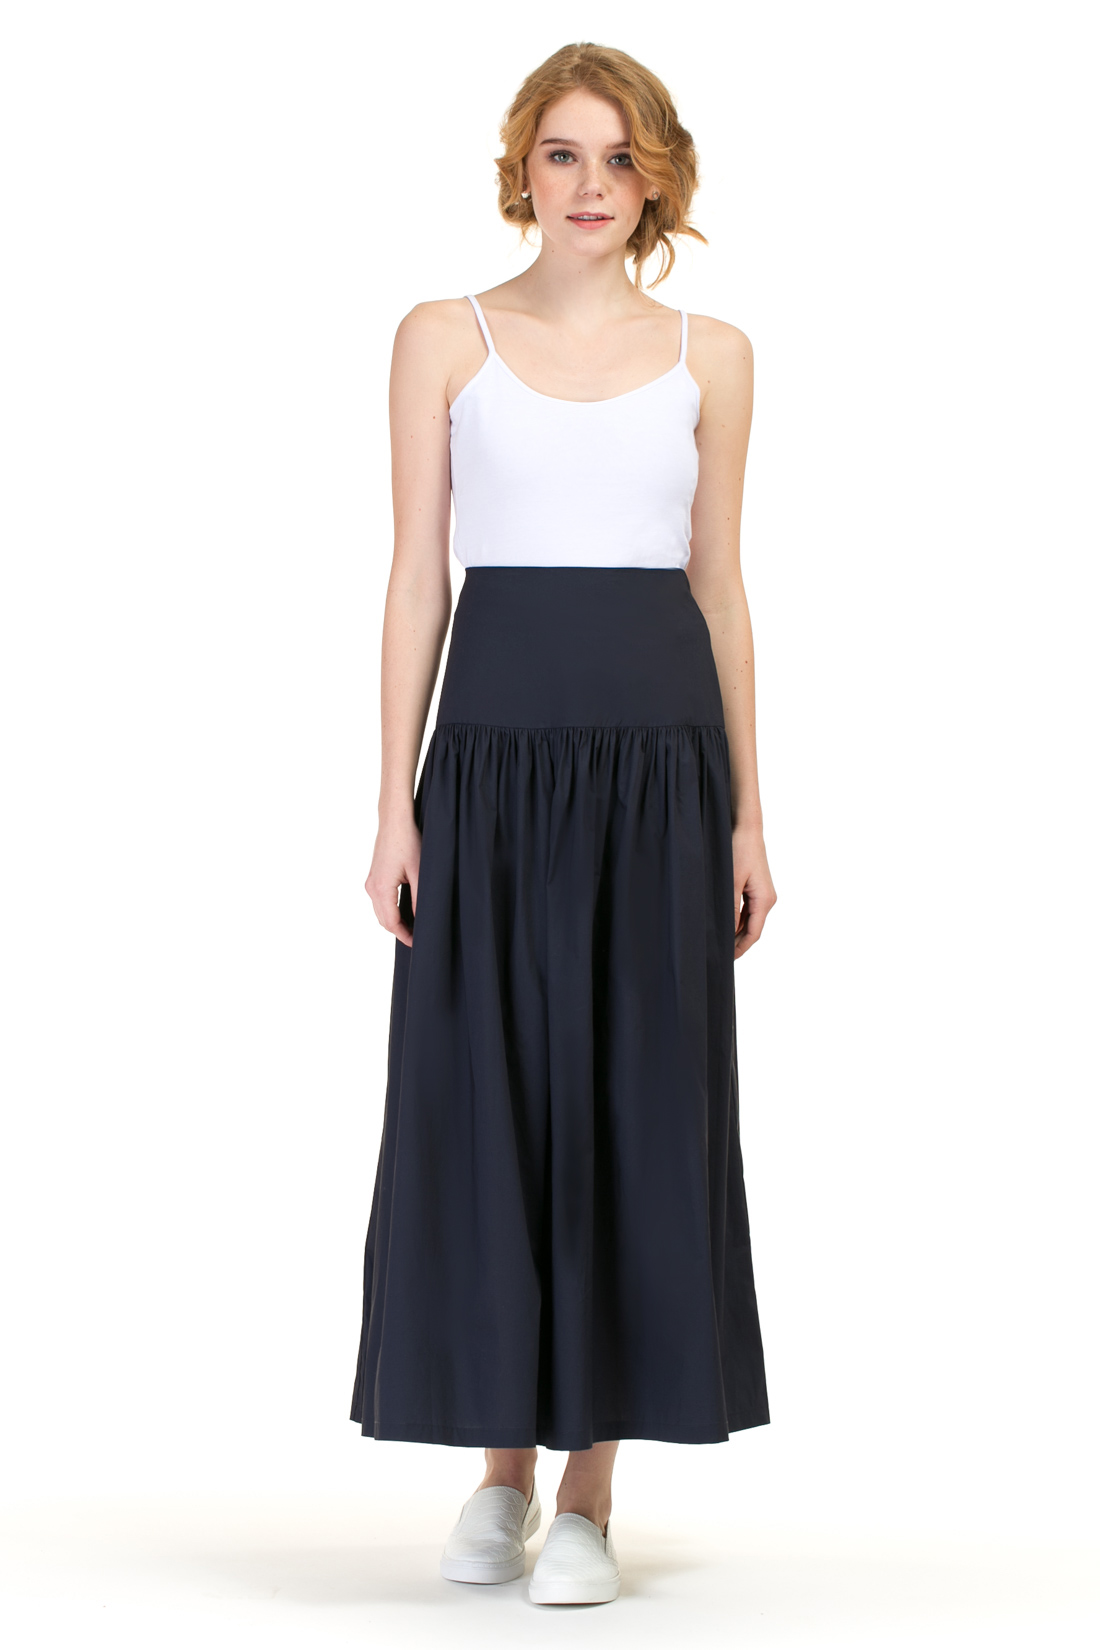 Длинная юбка с кокеткой (арт. baon B477022), размер L, цвет синий Длинная юбка с кокеткой (арт. baon B477022) - фото 1